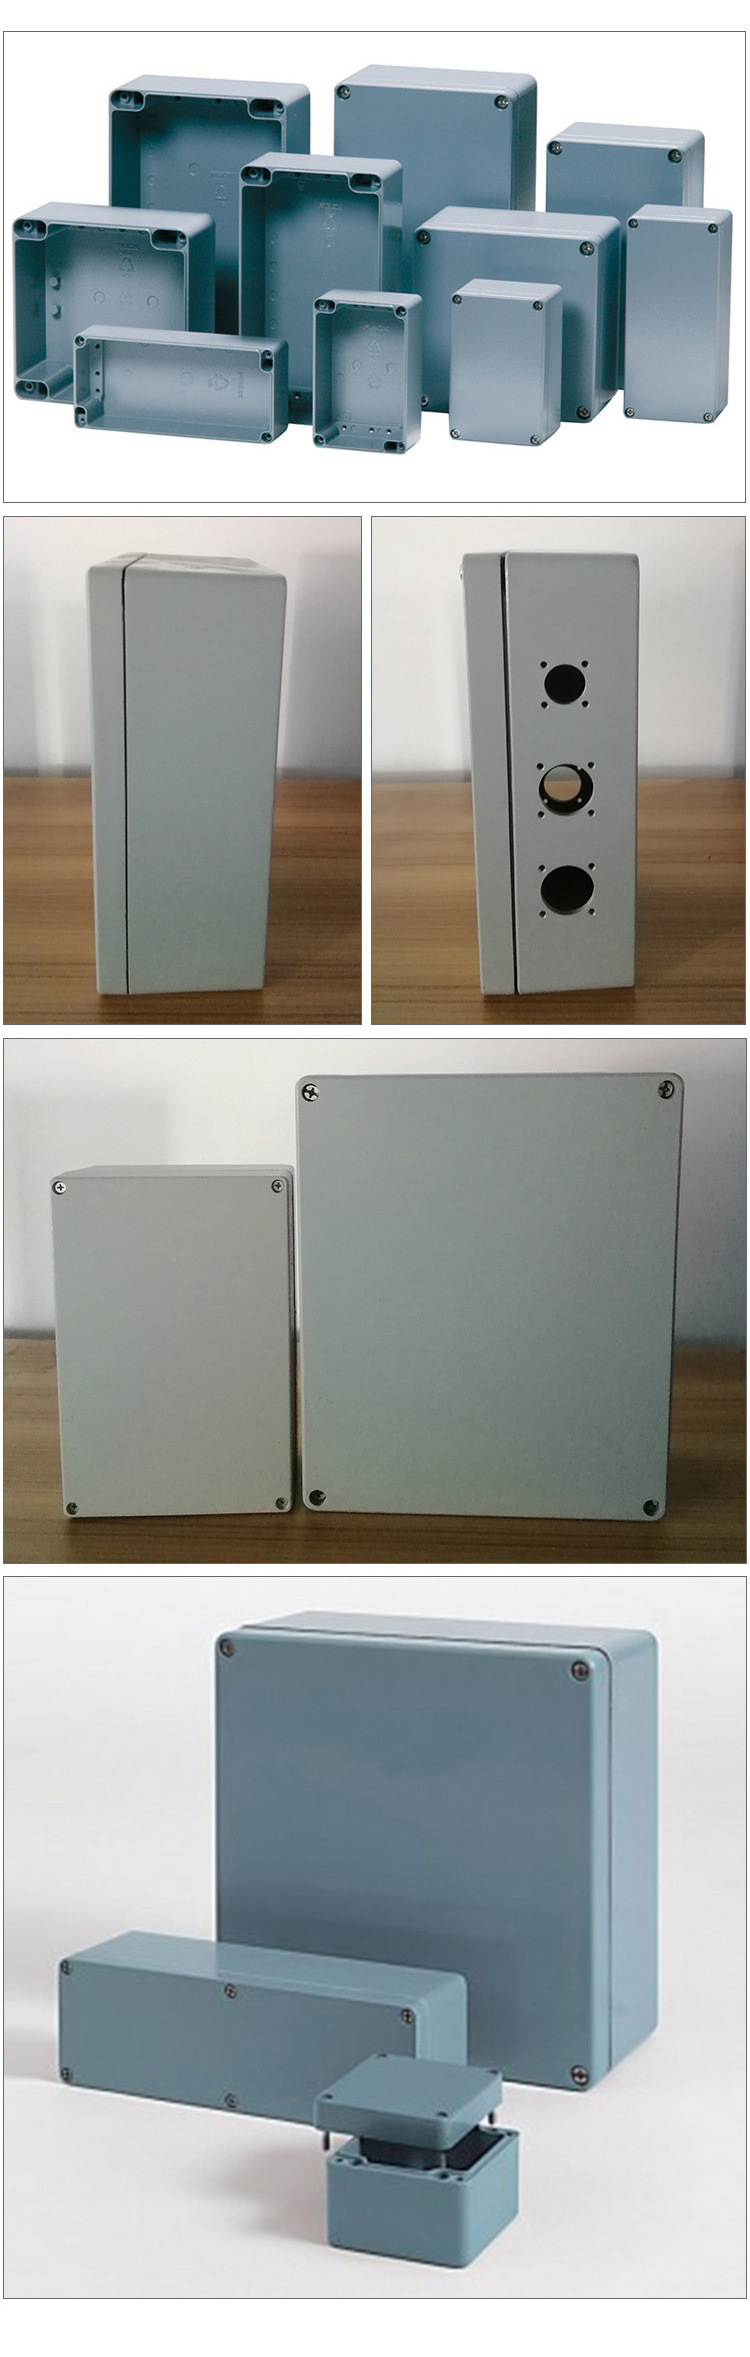 AL系列高端机械设备工业自动化设备用耐腐蚀耐酸碱防水铸铝盒示例图3